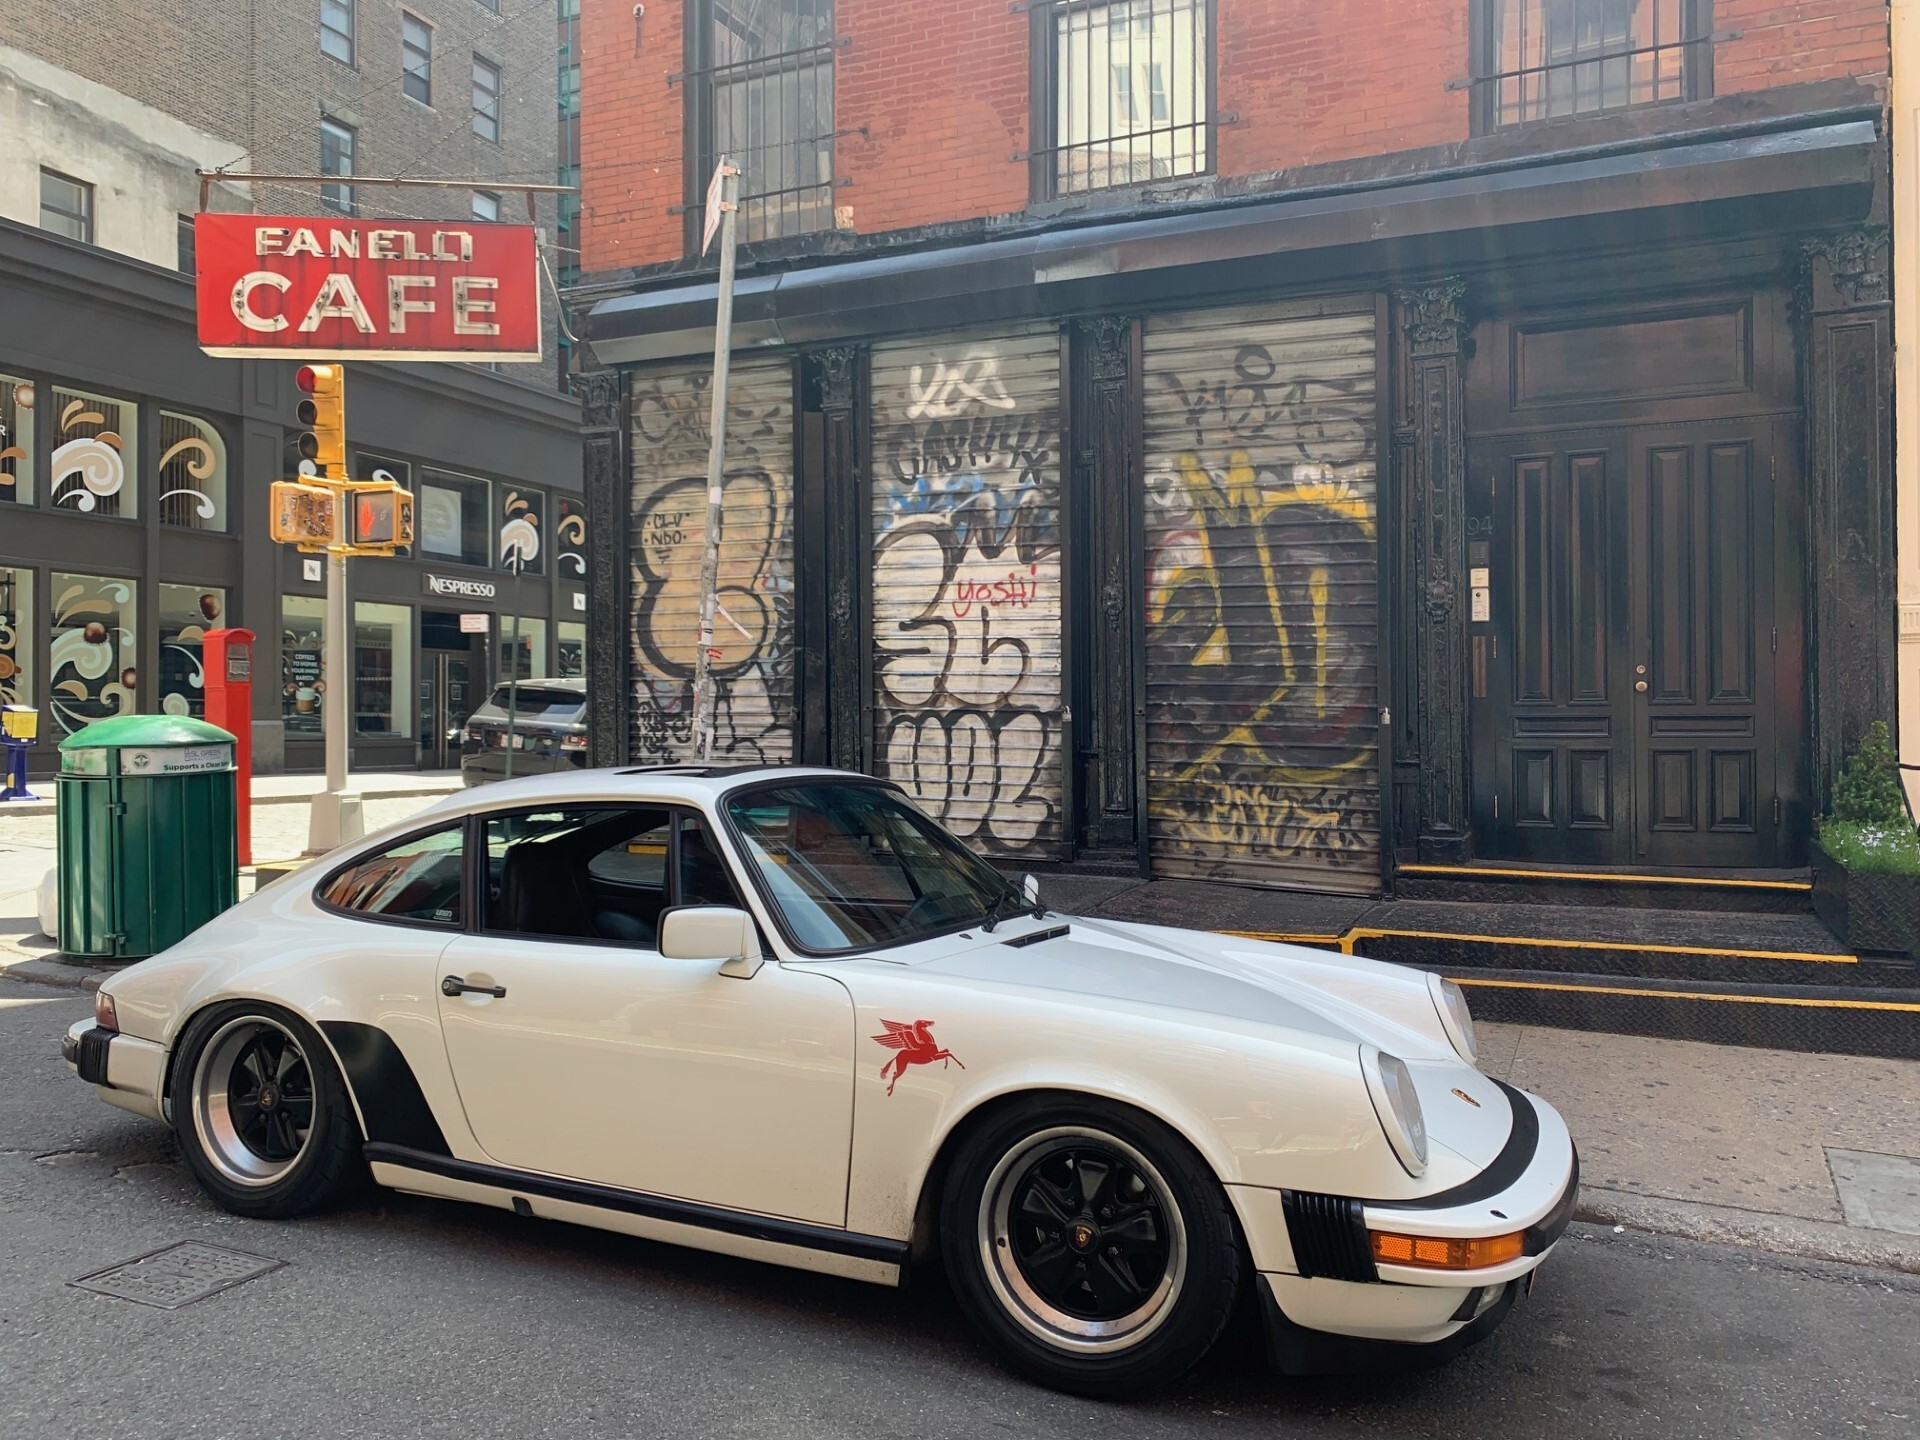 White Porsche 911 (type G-series) parked on New York street